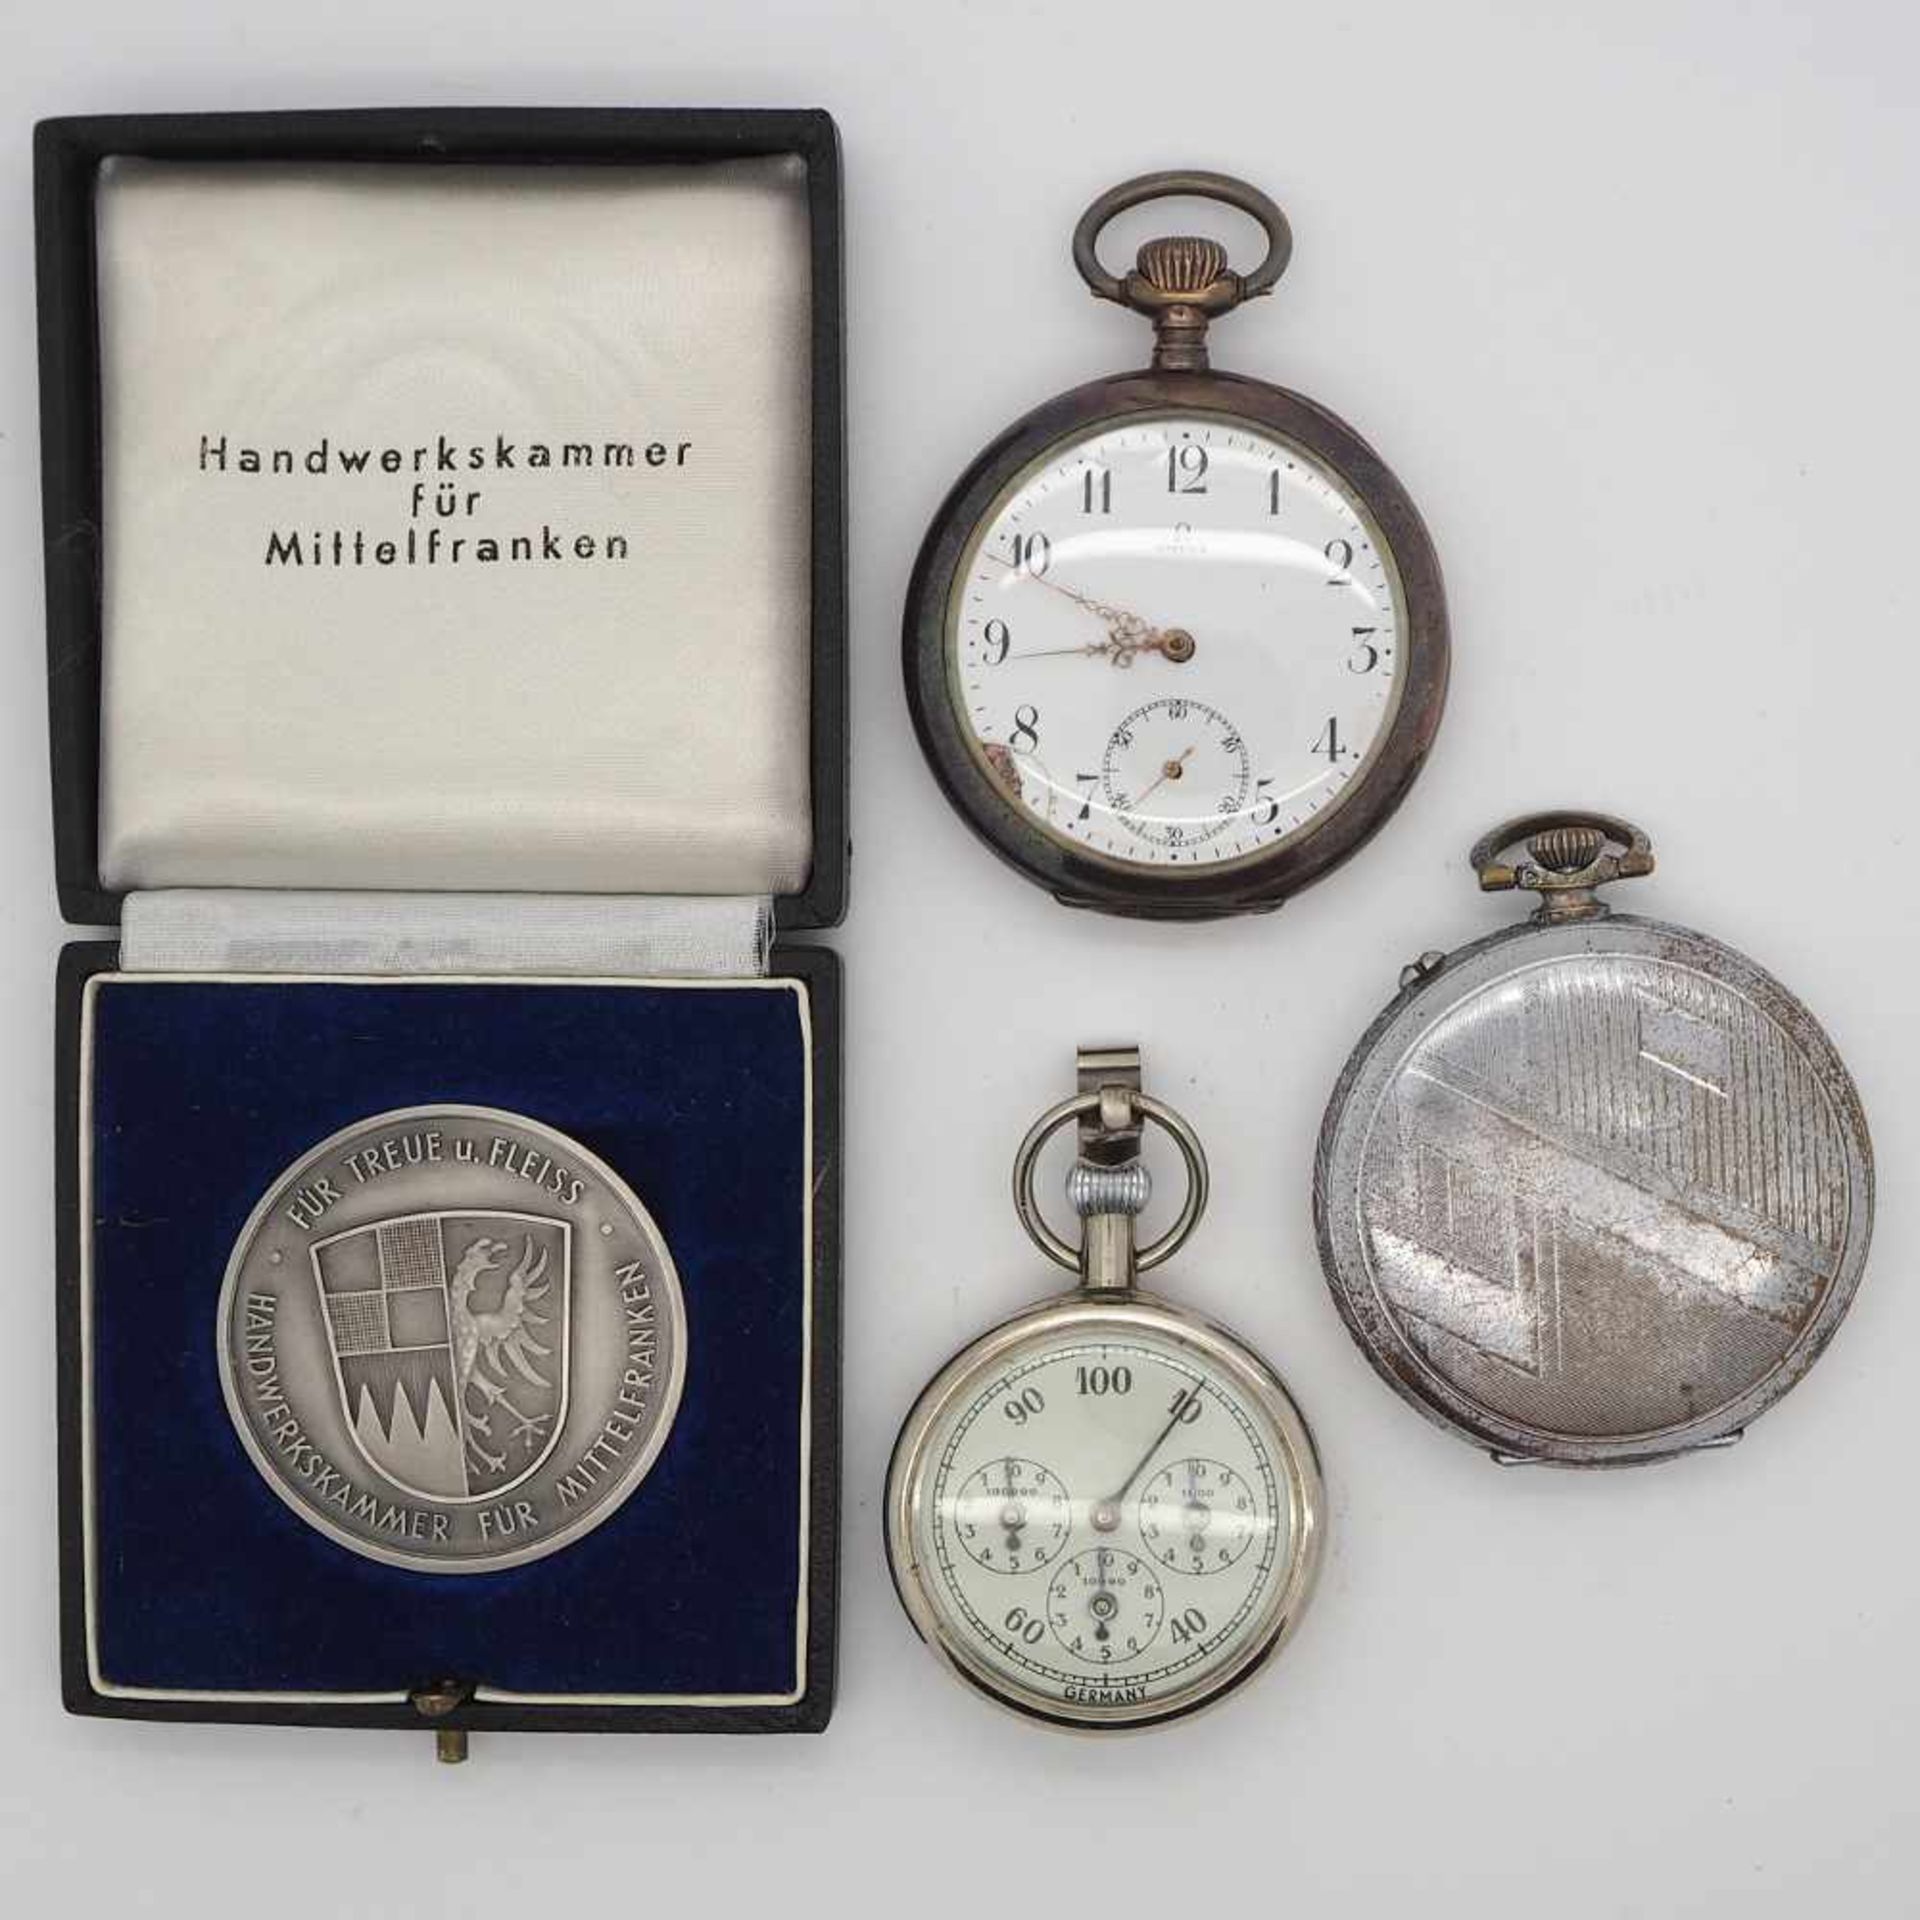 1 Taschenuhr Si. 800 OMEGA1 Taschenuhr 1 Stoppuhr Metall, 1 Medaille "Handwerkskammer Mittelfranken"